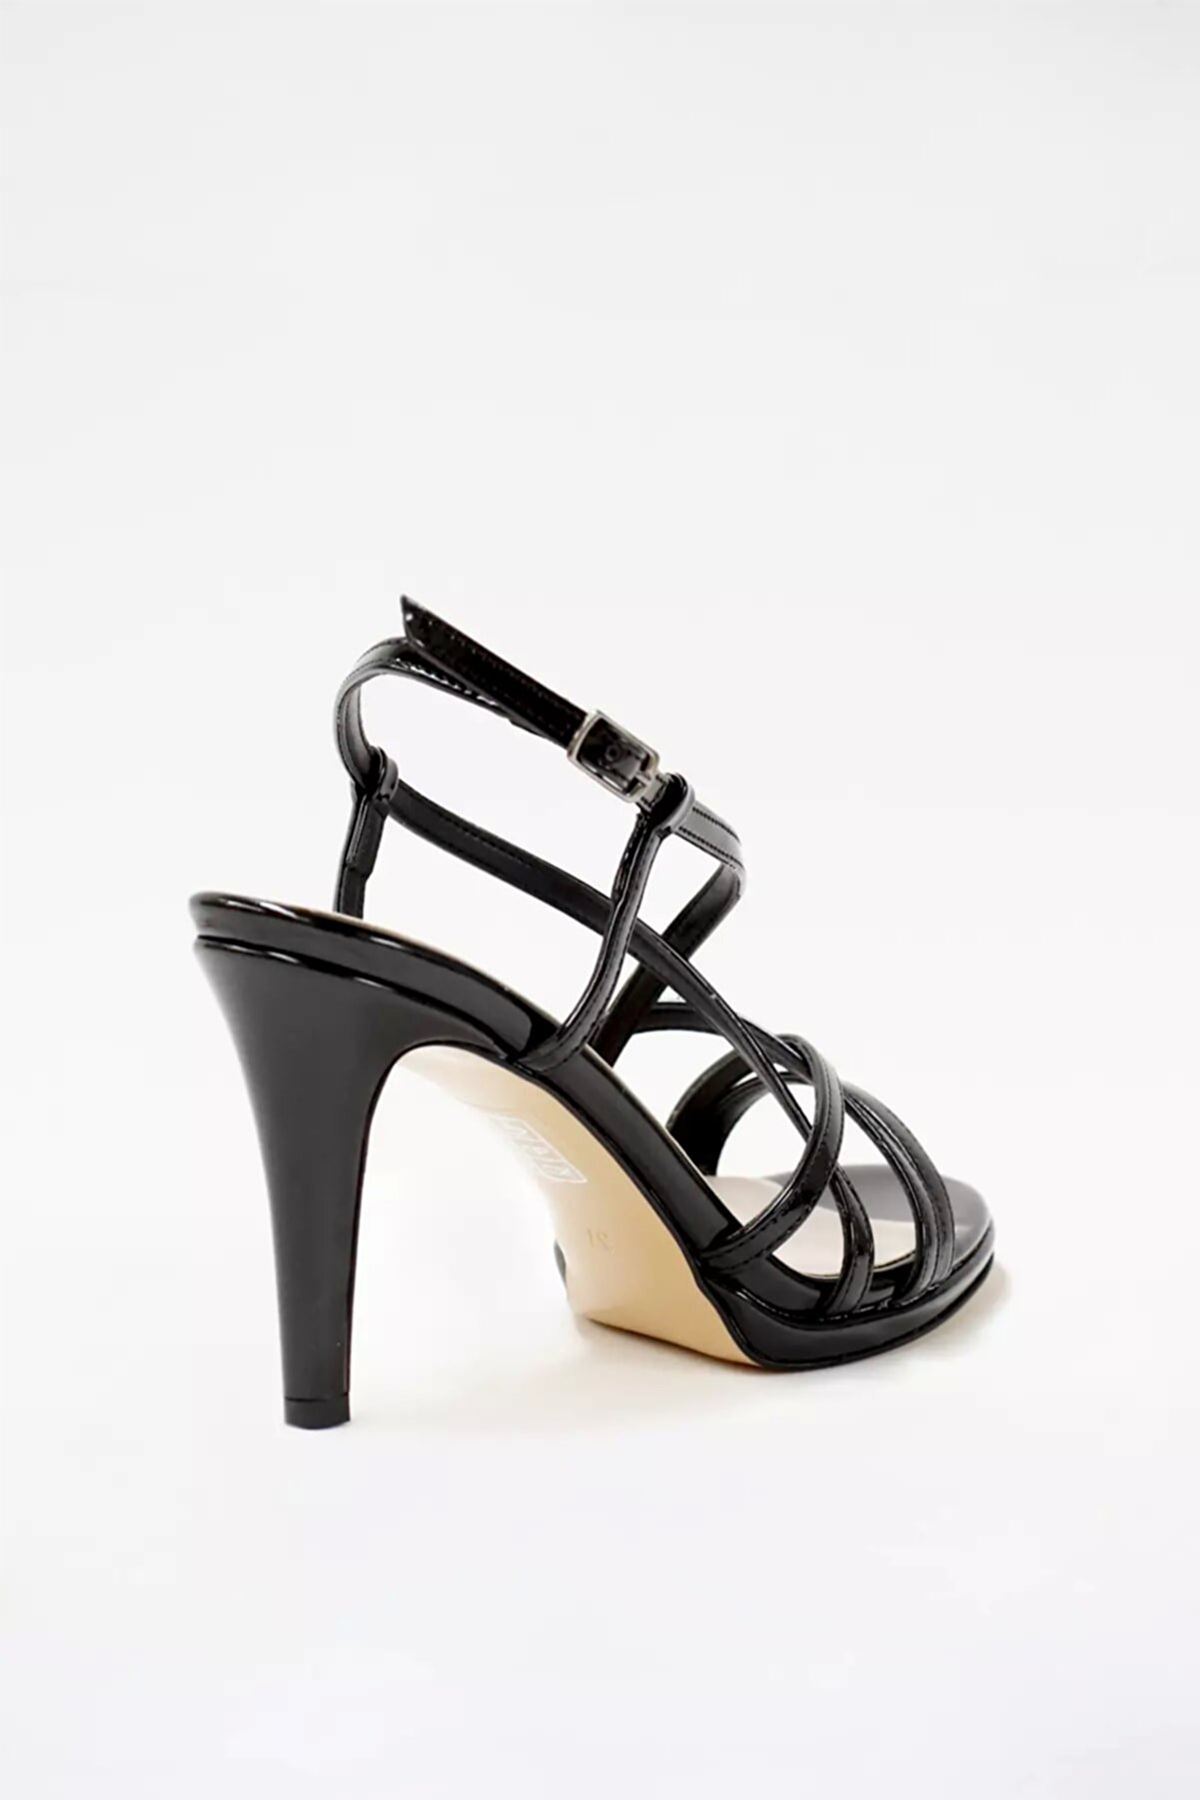 Kadın Bantlı Klasik Topuklu Ayakkabı Sandalet Luna Gate Shoes-Siyah Rugan